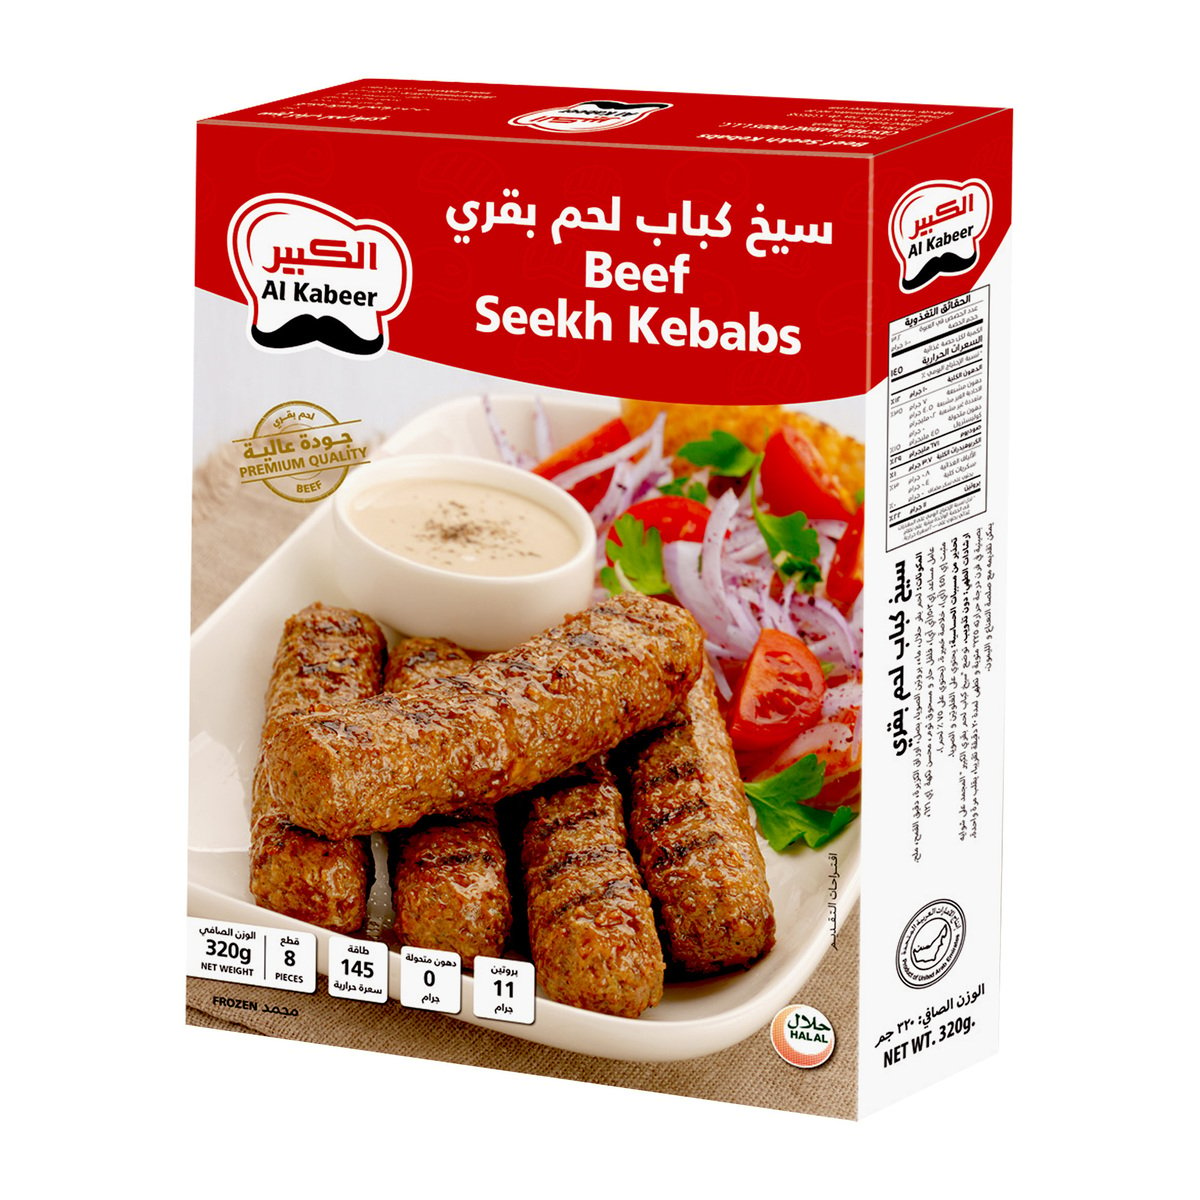 اشتري قم بشراء الكبير سيخ كباب لحم 320 جم Online at Best Price من الموقع - من لولو هايبر ماركت Kebabs في السعودية